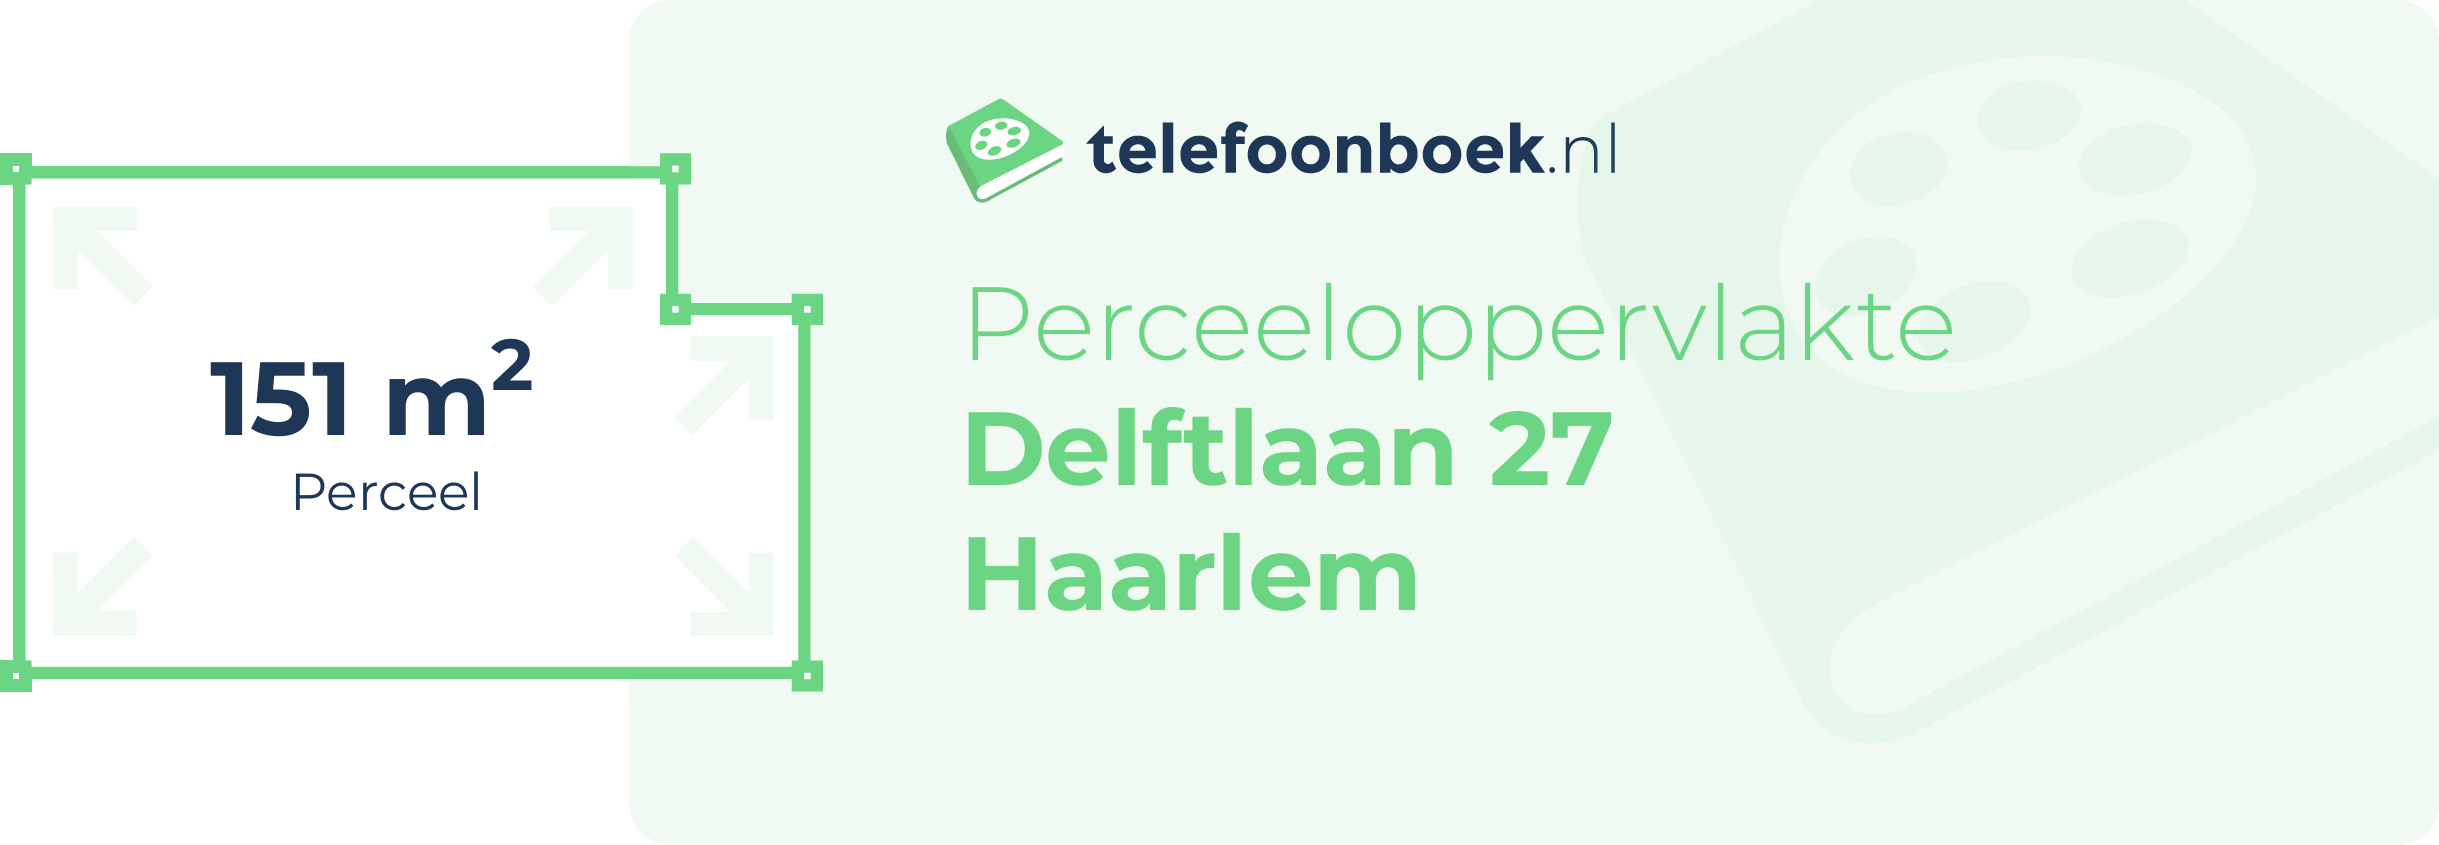 Perceeloppervlakte Delftlaan 27 Haarlem